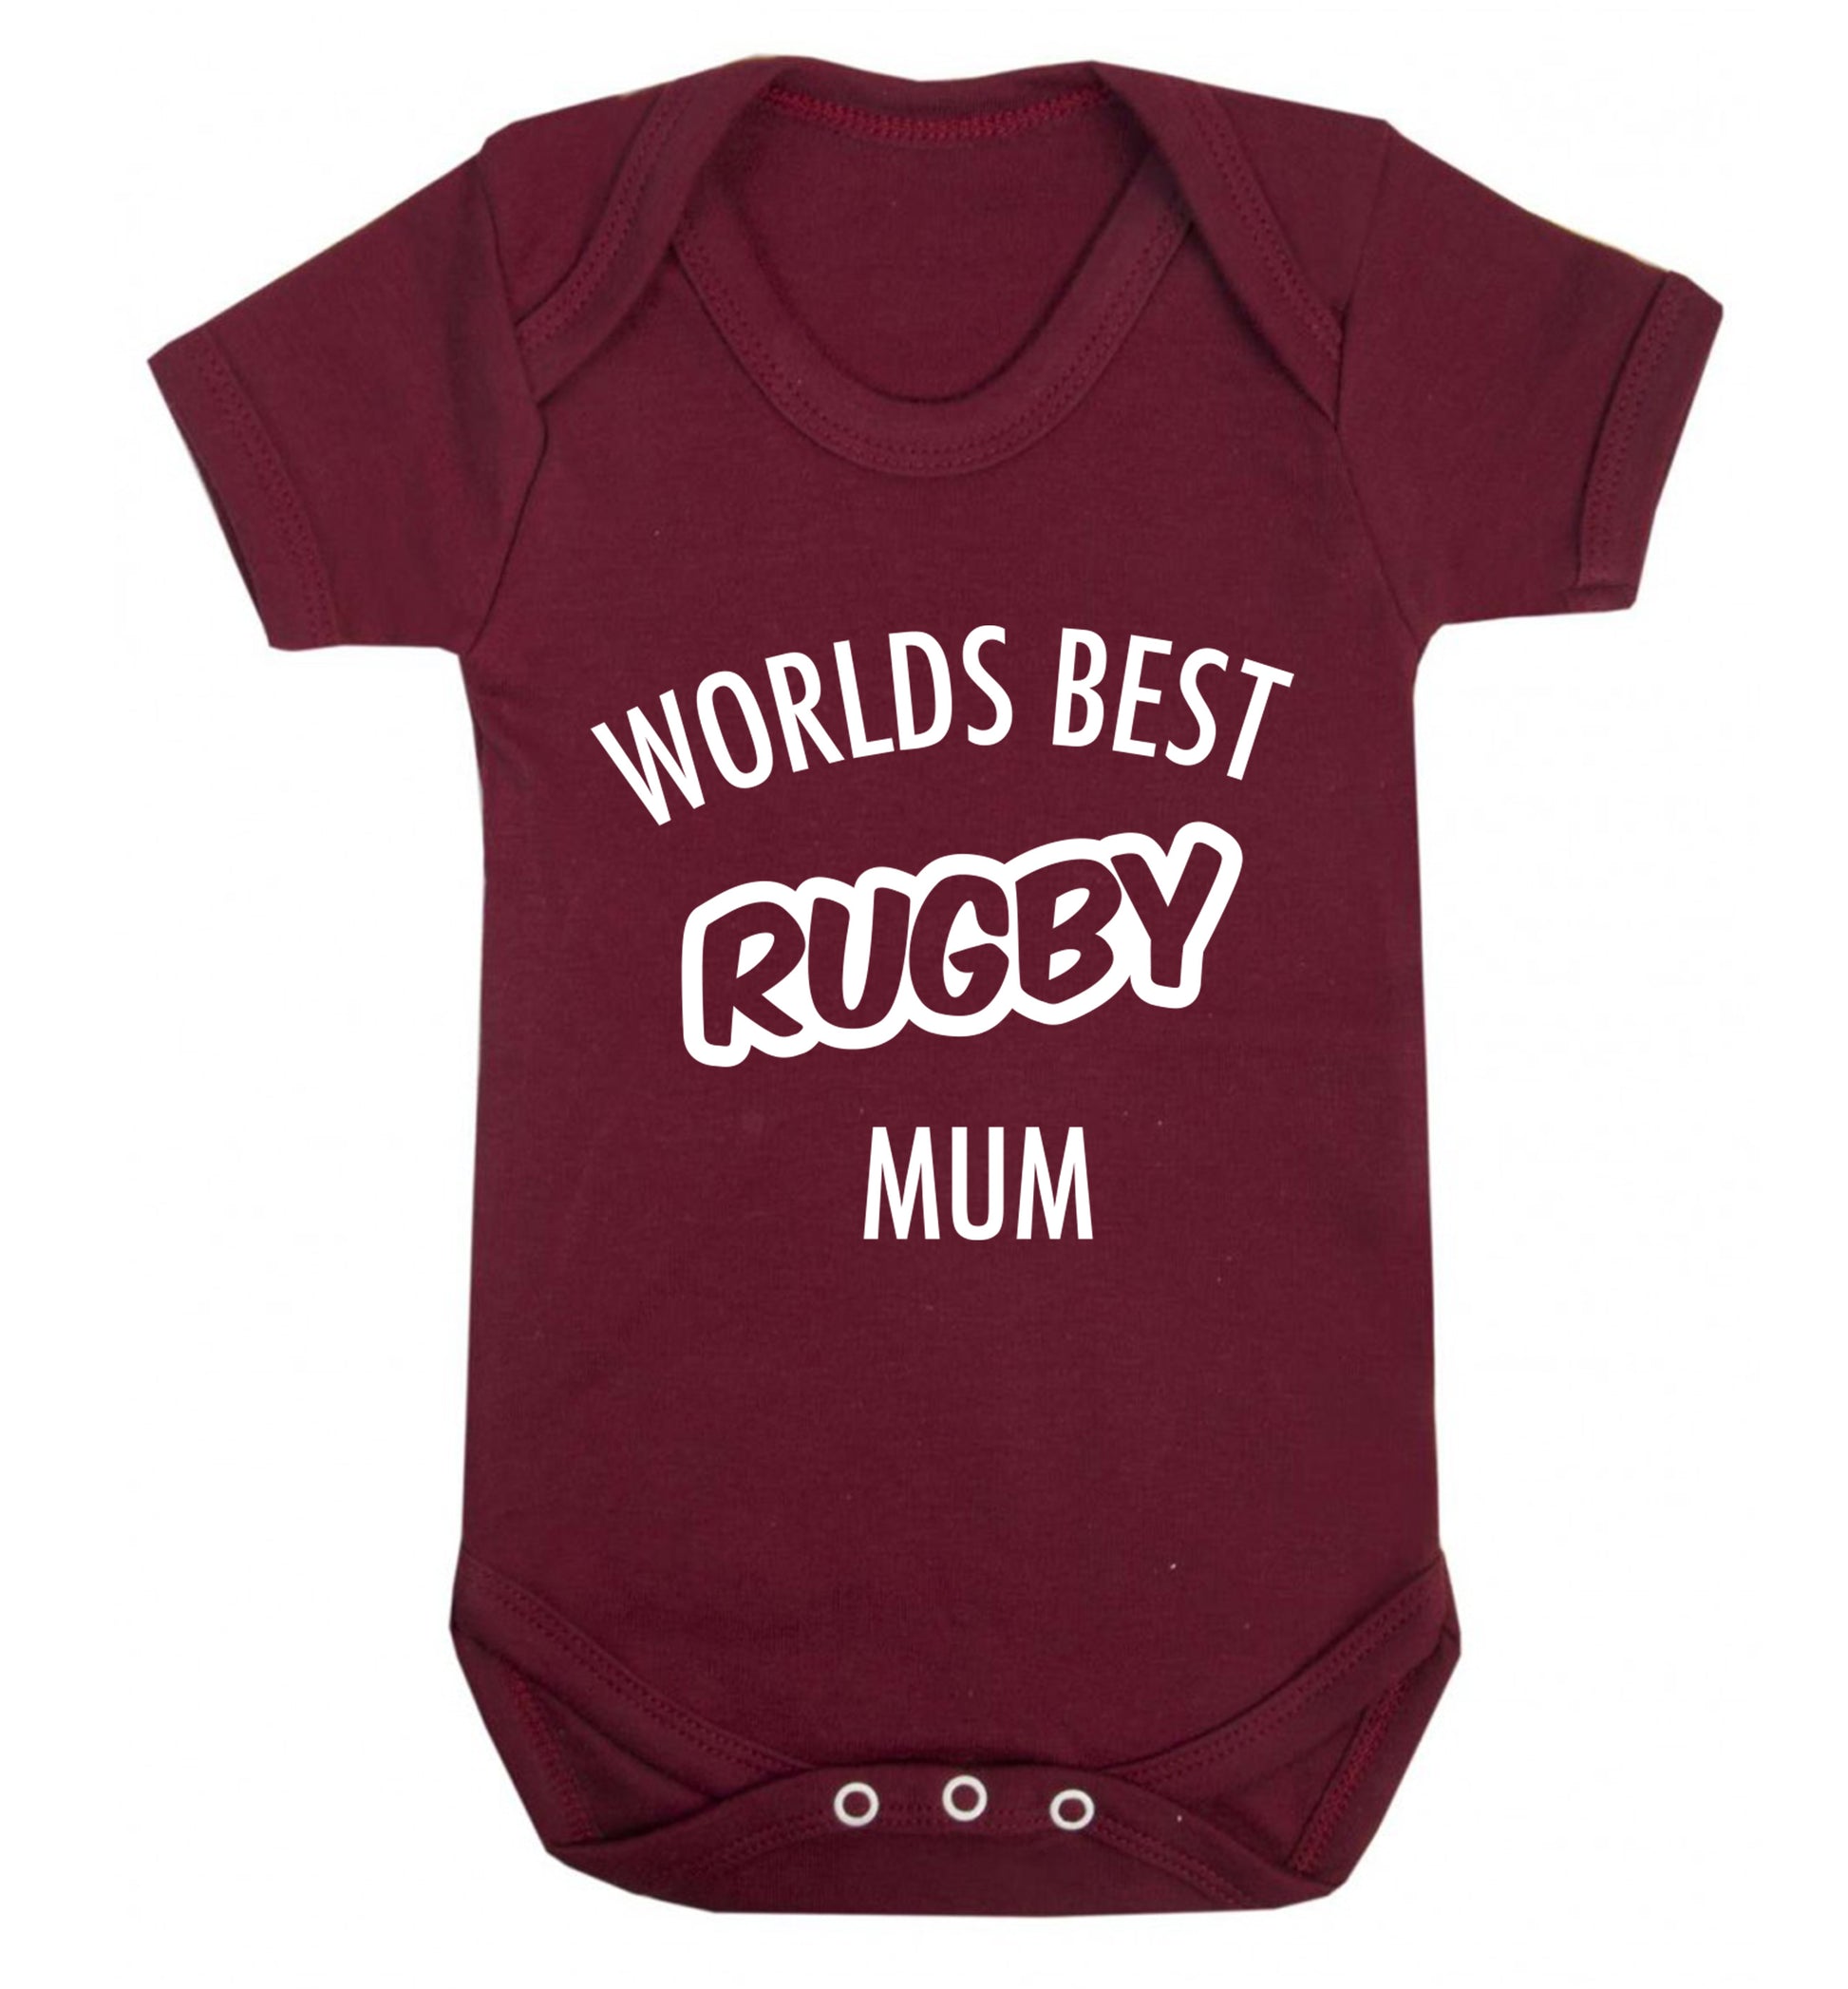 Worlds best rugby mum Baby Vest maroon 18-24 months